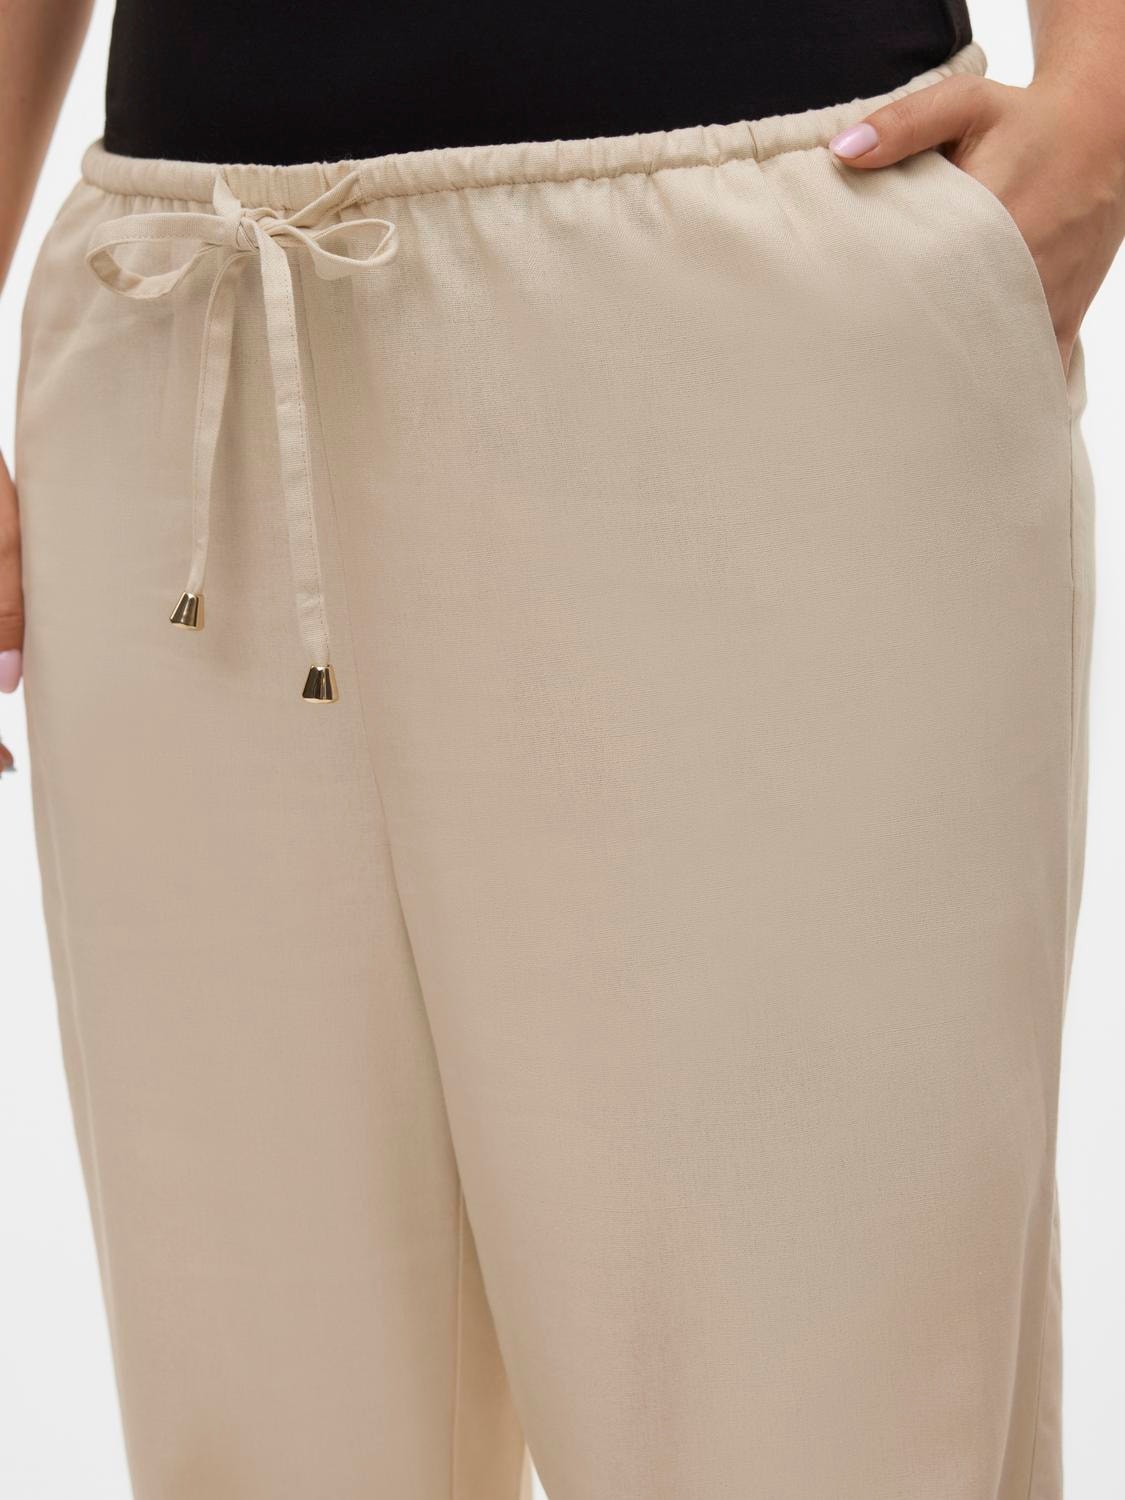 Vero Moda VMDINNA Mid waist Trousers -Oatmeal - 10316279